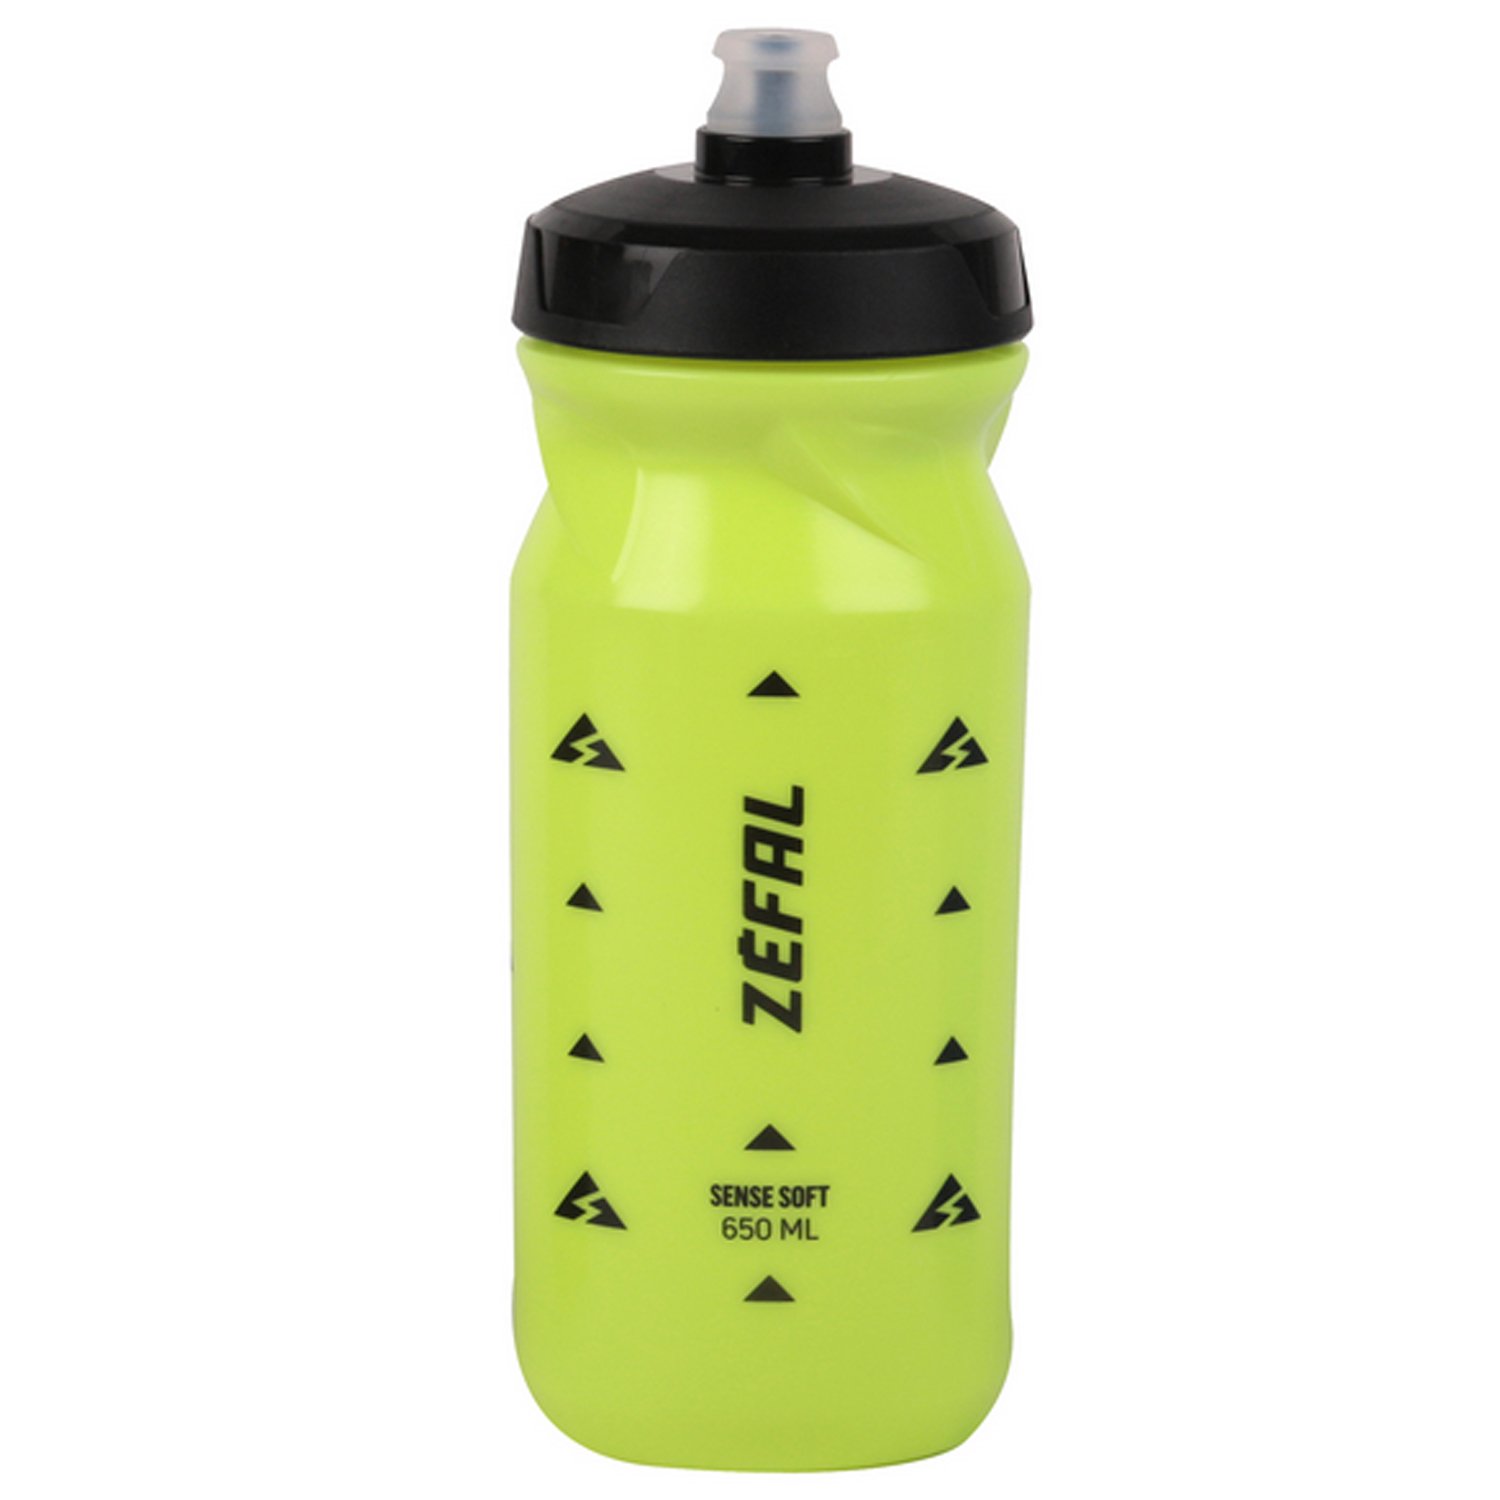 Фляга велосипедная Zefal Sense Soft 65 Bottle Neon, пластик, 650 мл, желтый, 2023, 155N защитная плёнка велосипедная zefal armor tape 1m roll б р 2606